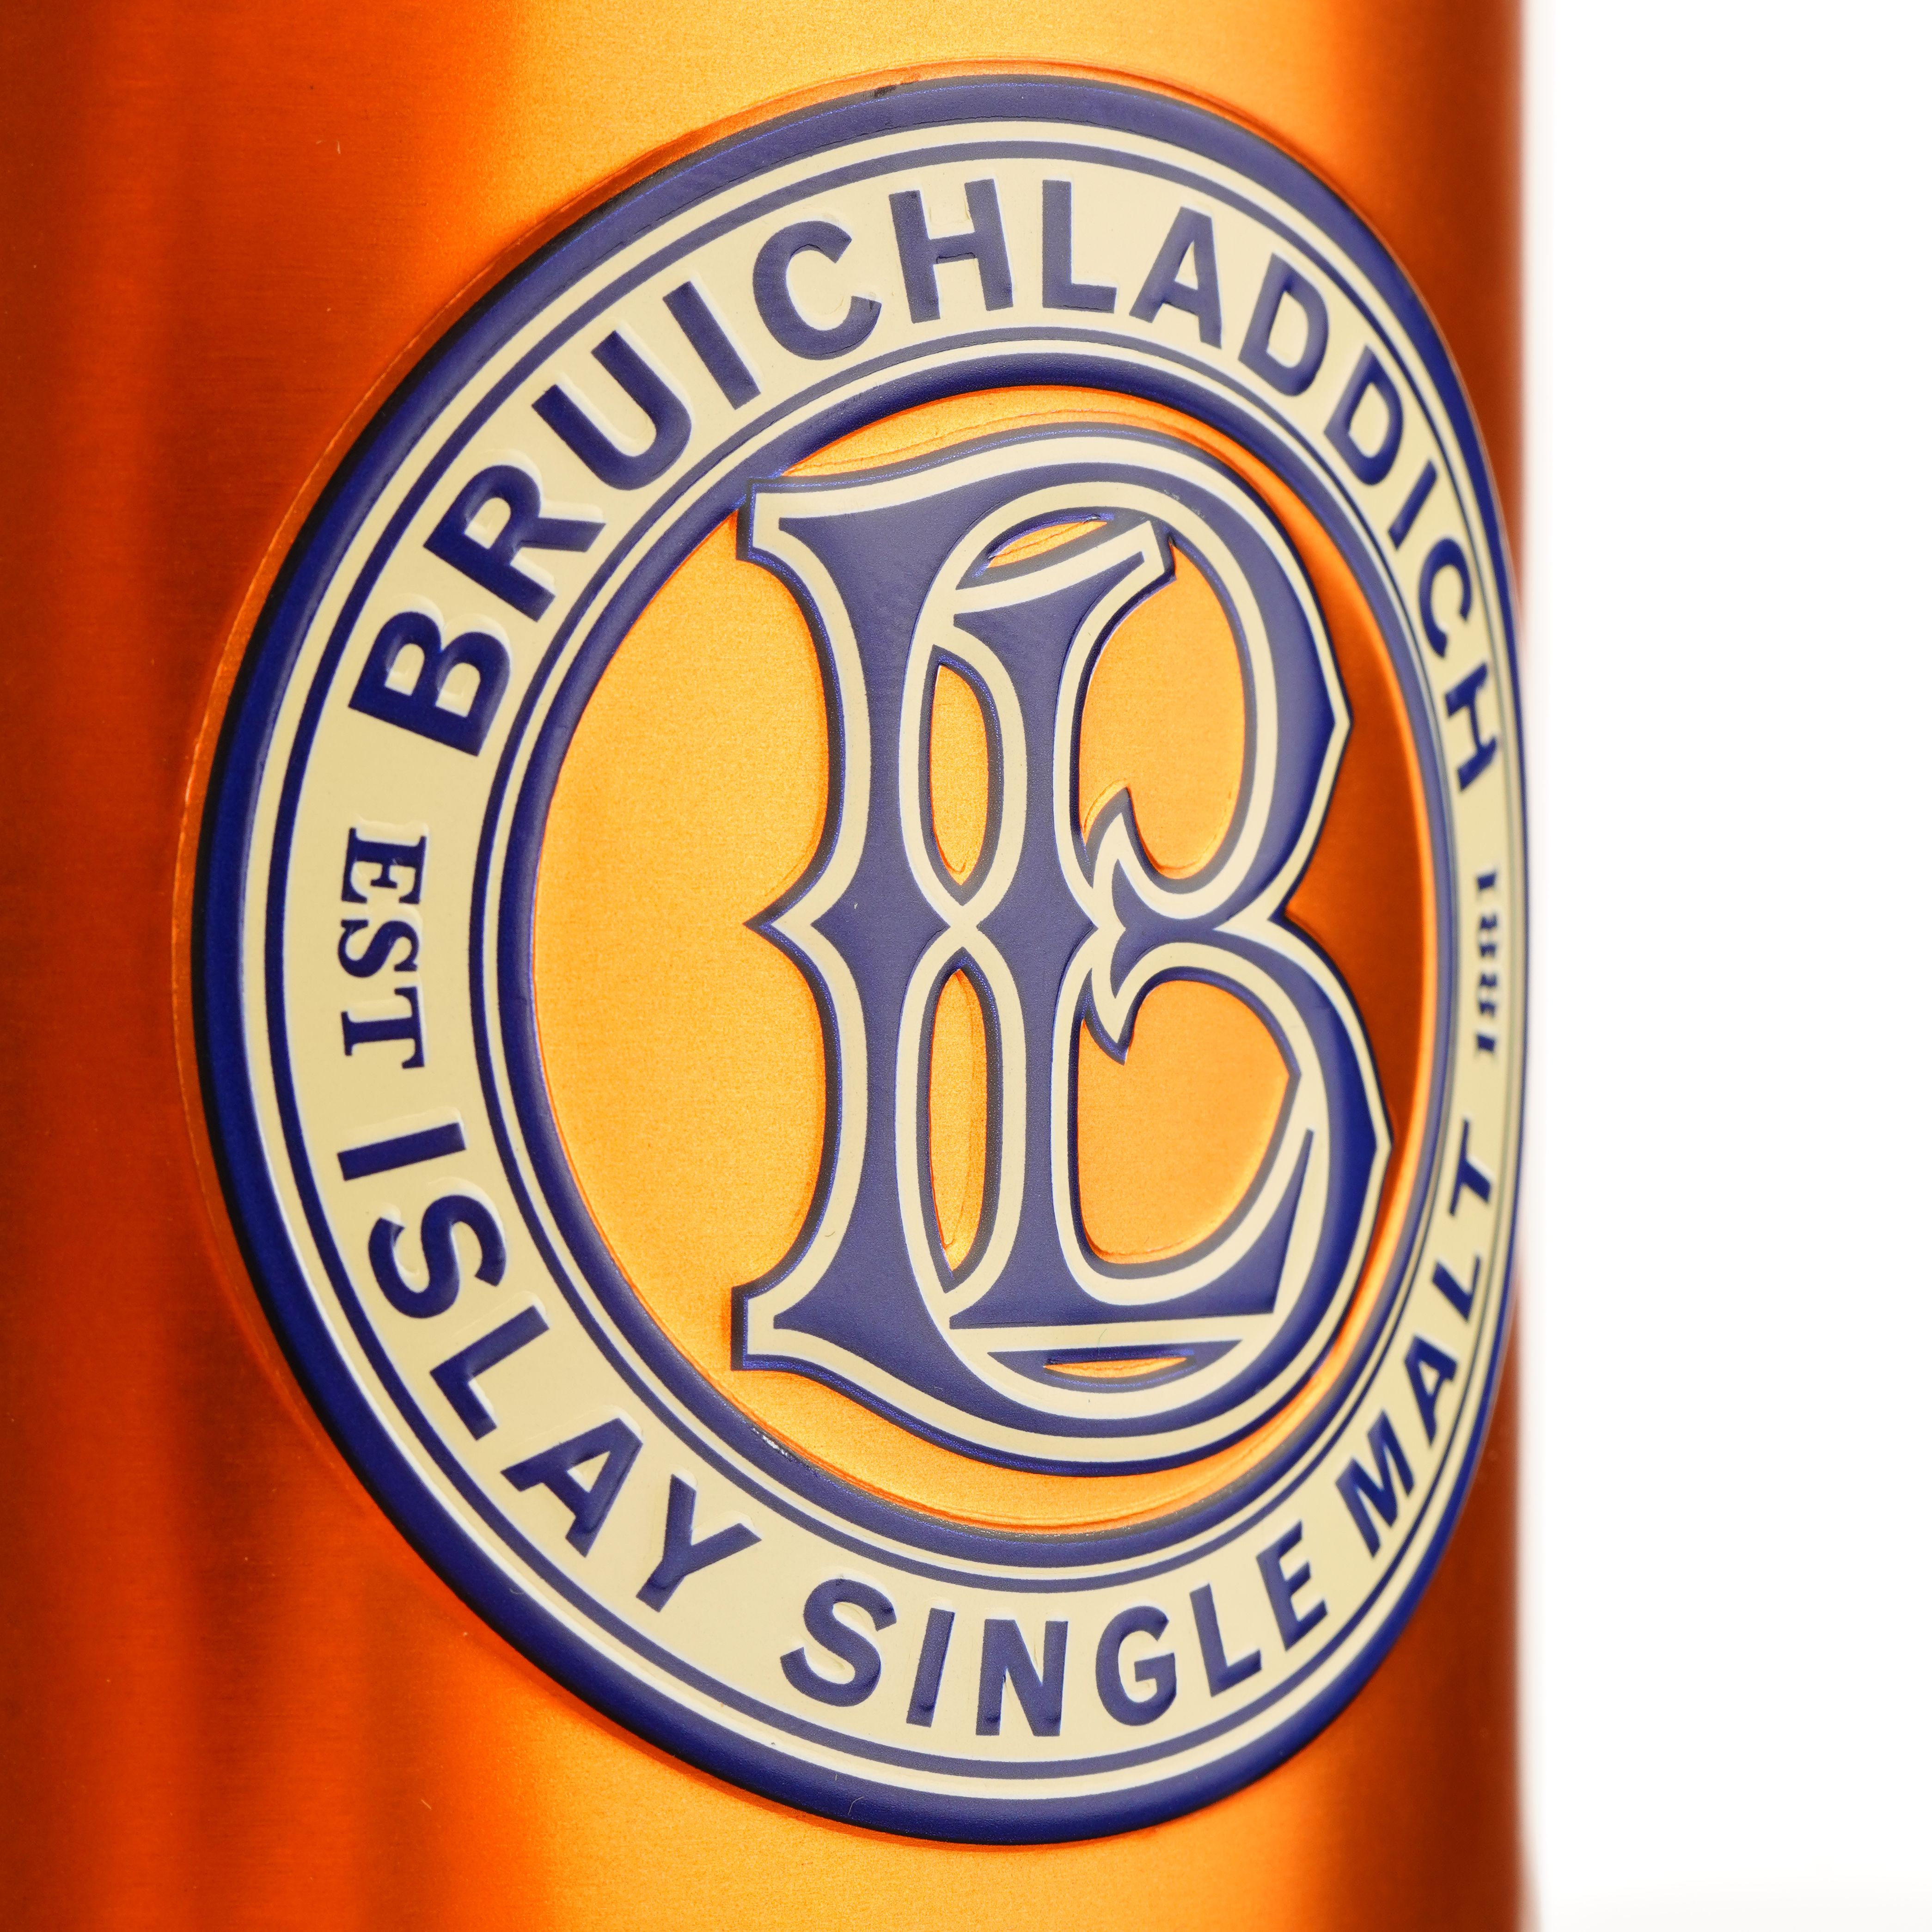 Виски Bruichladdich Super Heavily Peated Single Malt Scotch Whisky, в подарочной упаковке, 46%, 0,7 л - фото 7